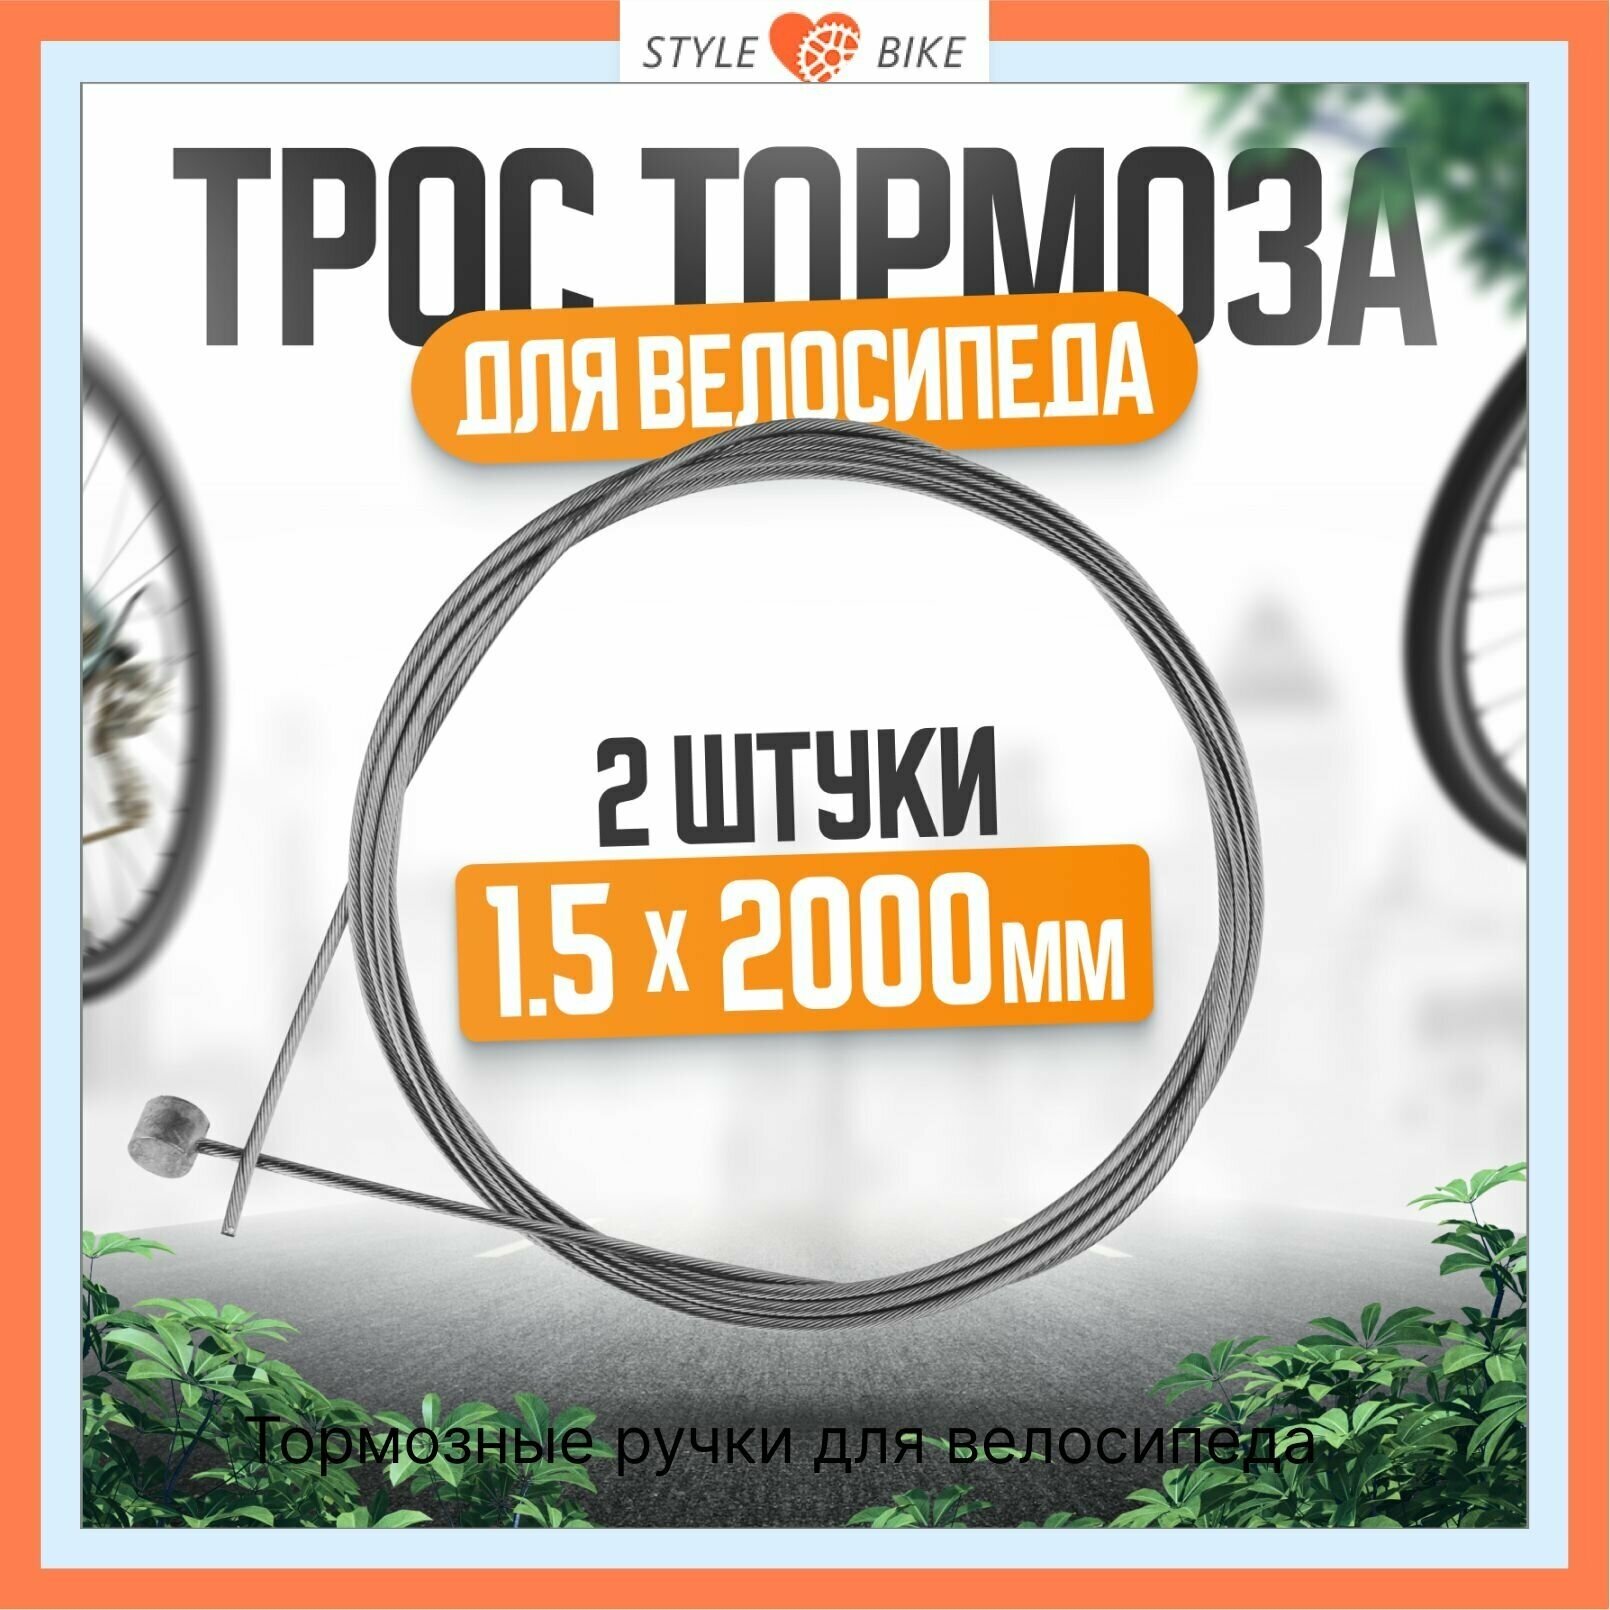 Трос тормоза для велосипеда сталь 15 мм x 2000 мм с гальваническим покрытием (комплект 2 шт) + 2 латунных наконечника.